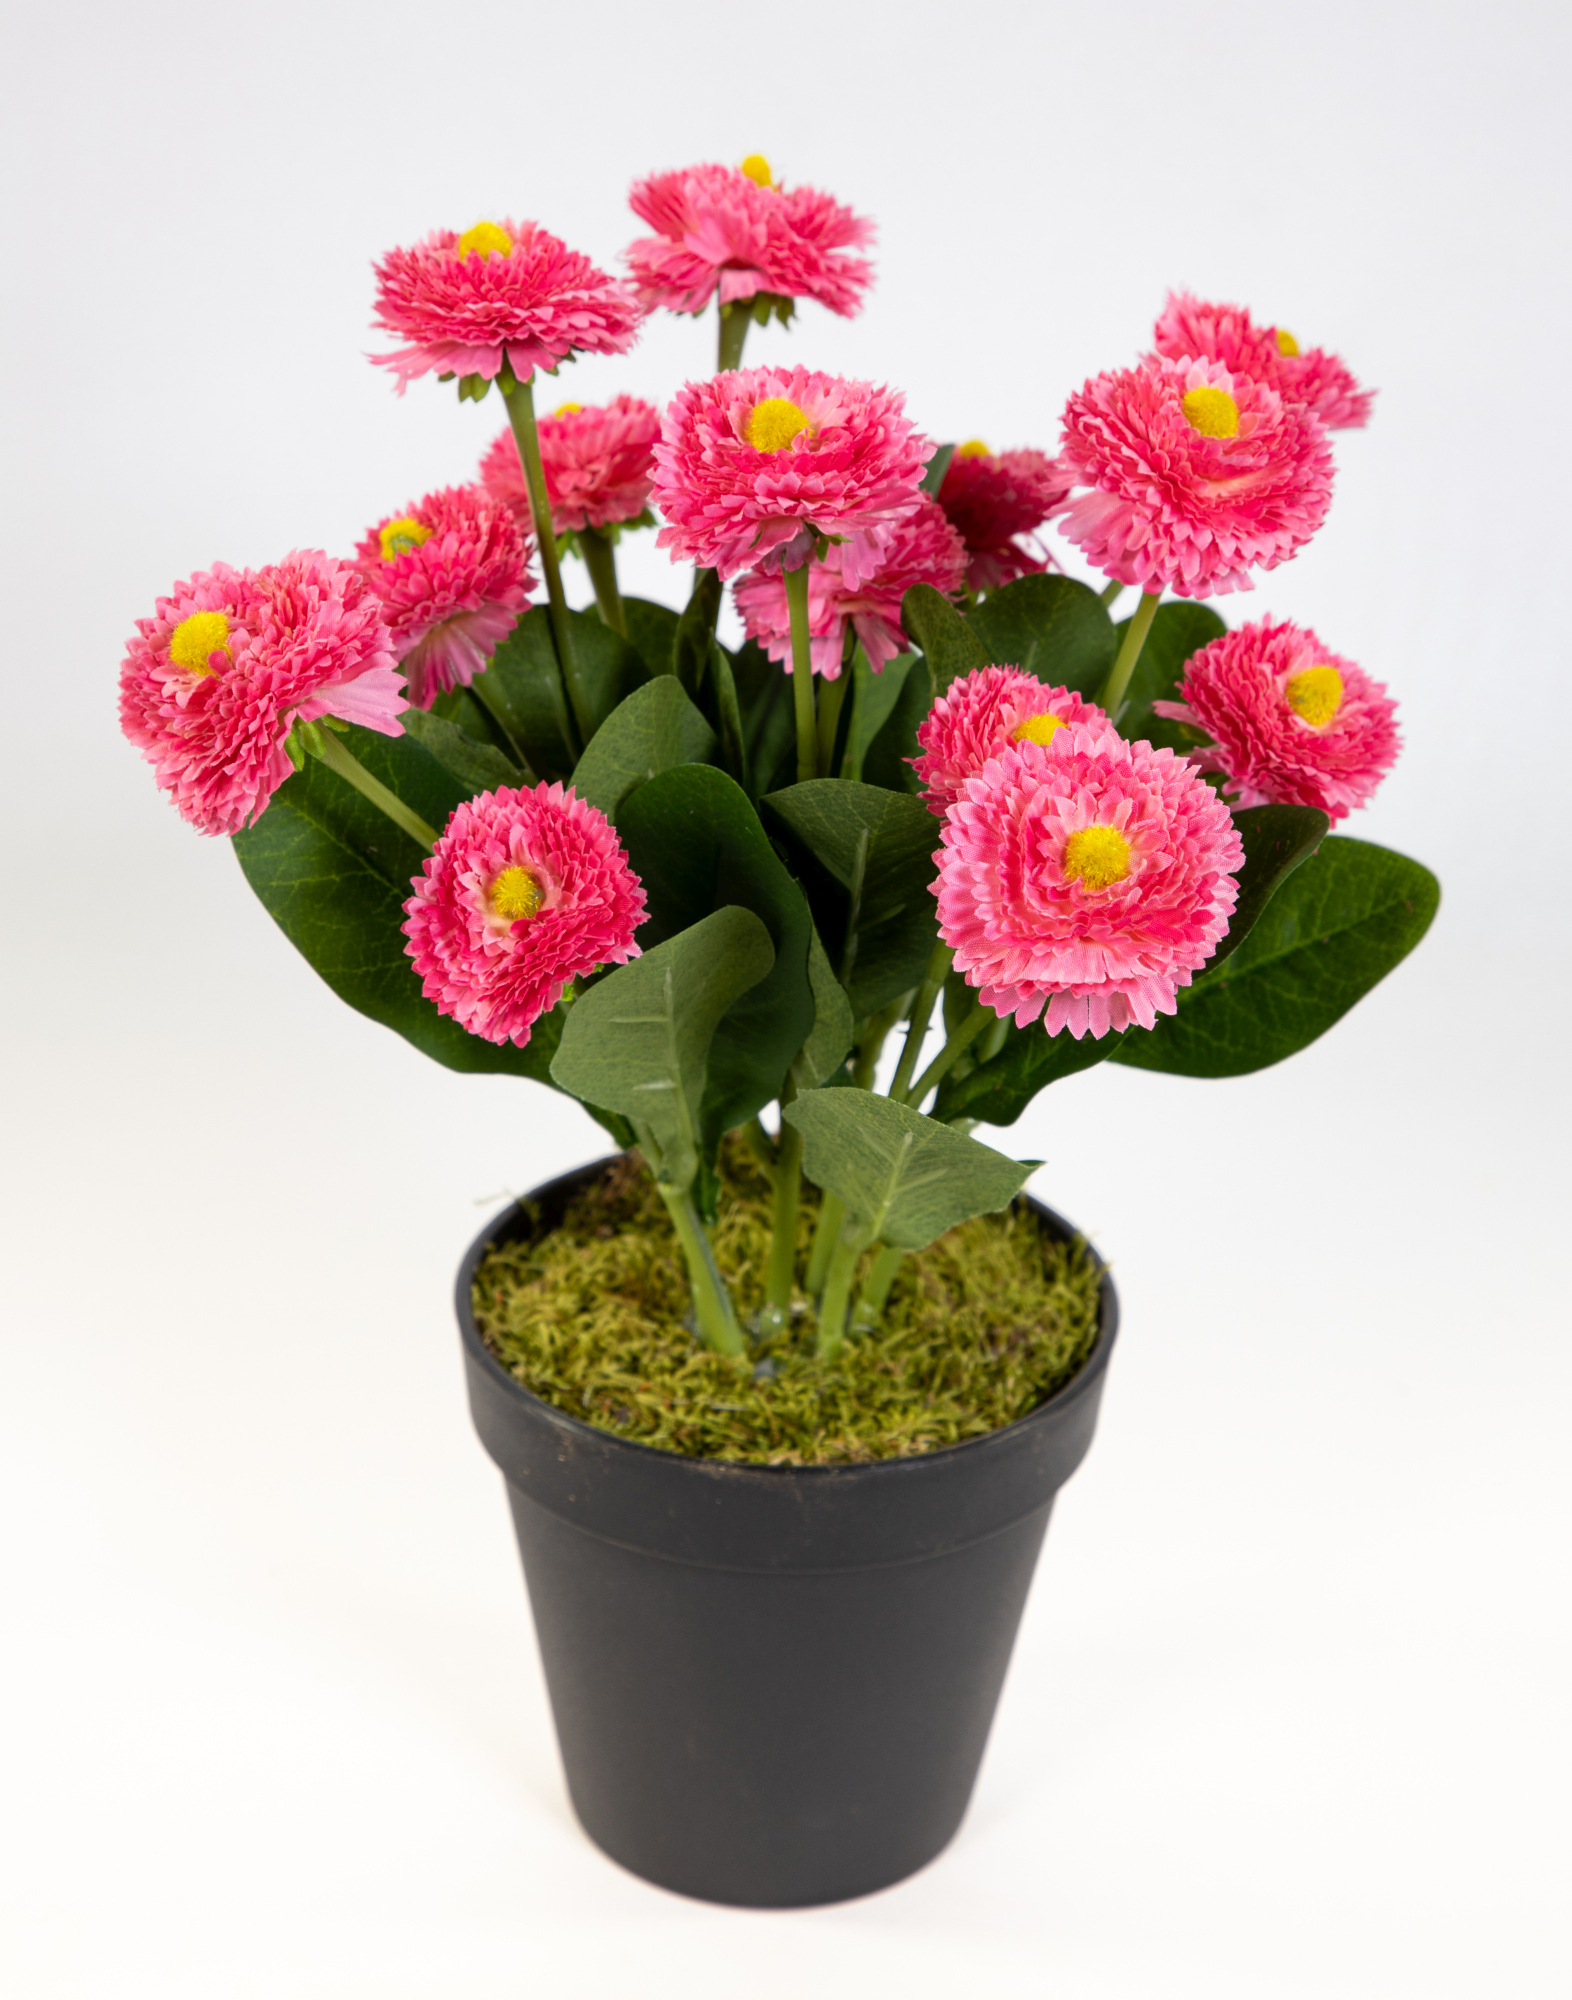 Bellispflanze / Bellis 28cm rosa-pink im Topf DP Kunstblumen künstliche Bellis Blumen Gänseblümchen